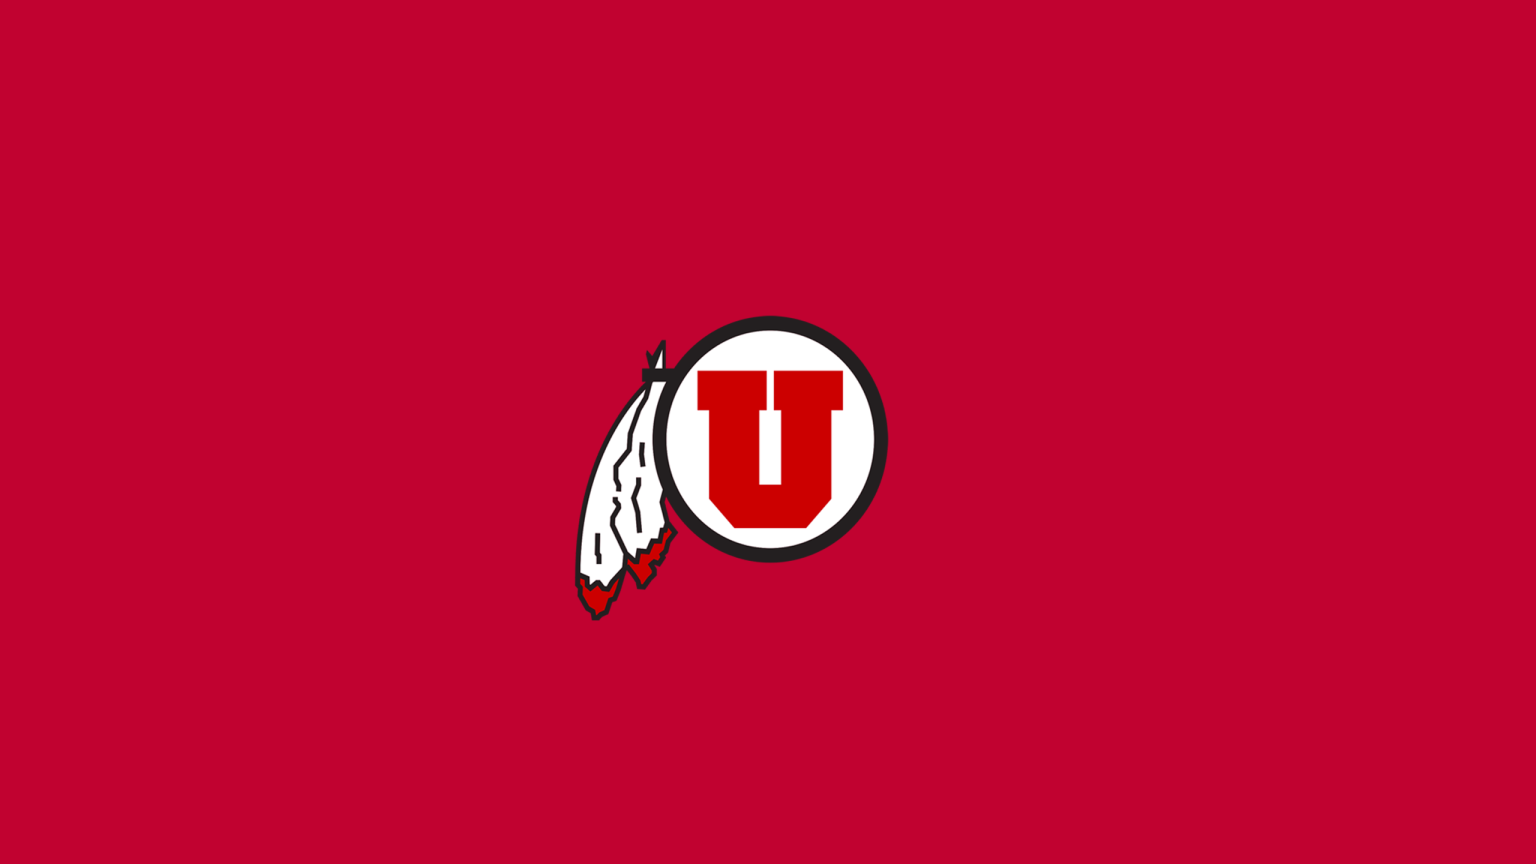 Utah Utes Basketball - NCAAB - Square Bettor